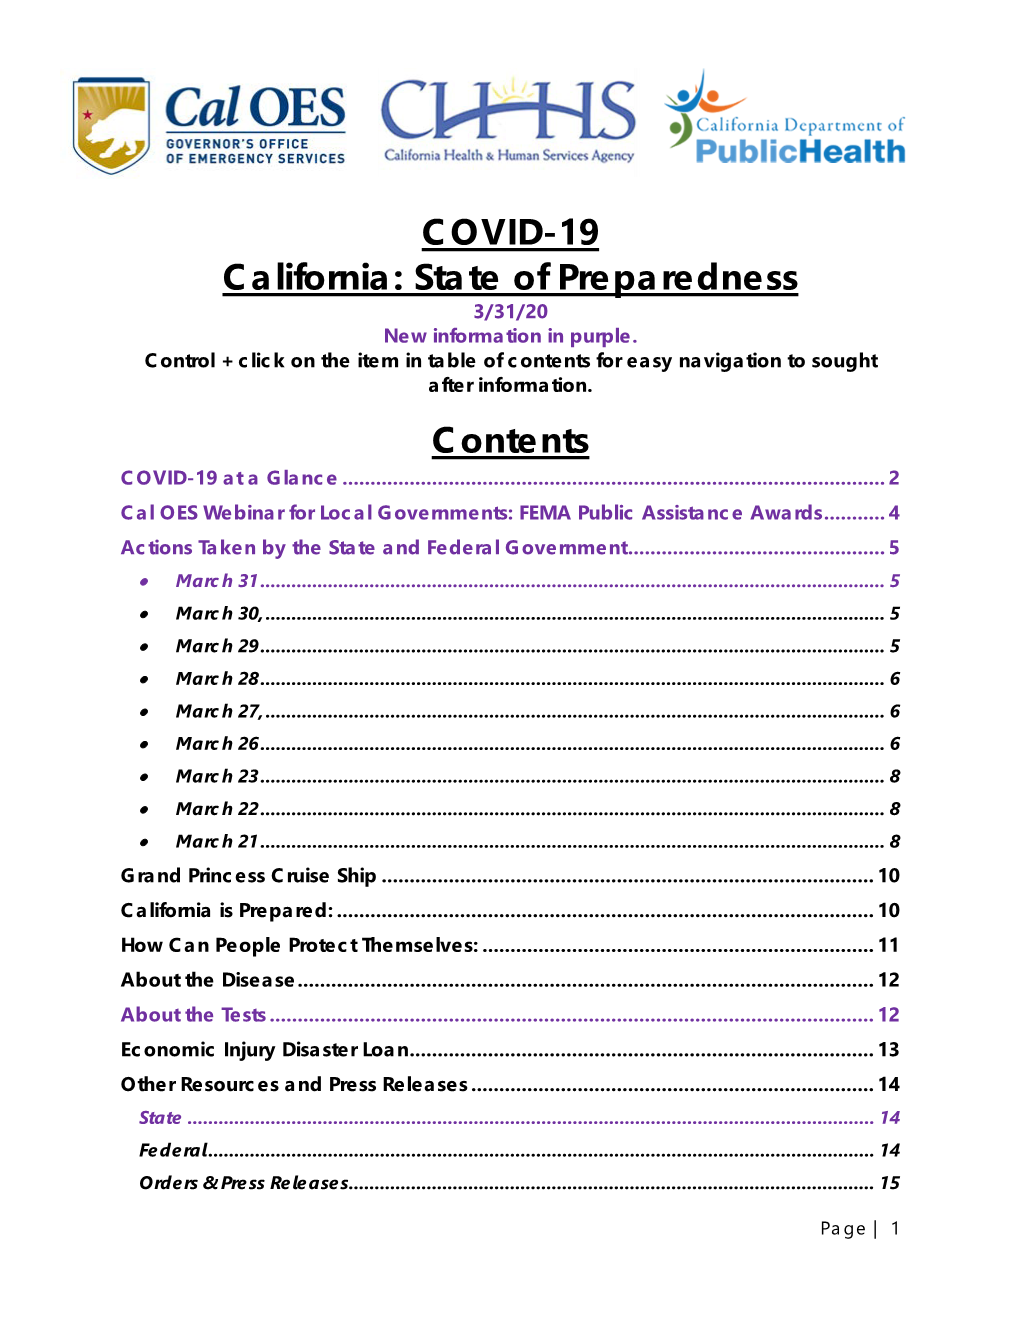 COVID-19 California: State of Preparedness 3/31/20 New Information in Purple